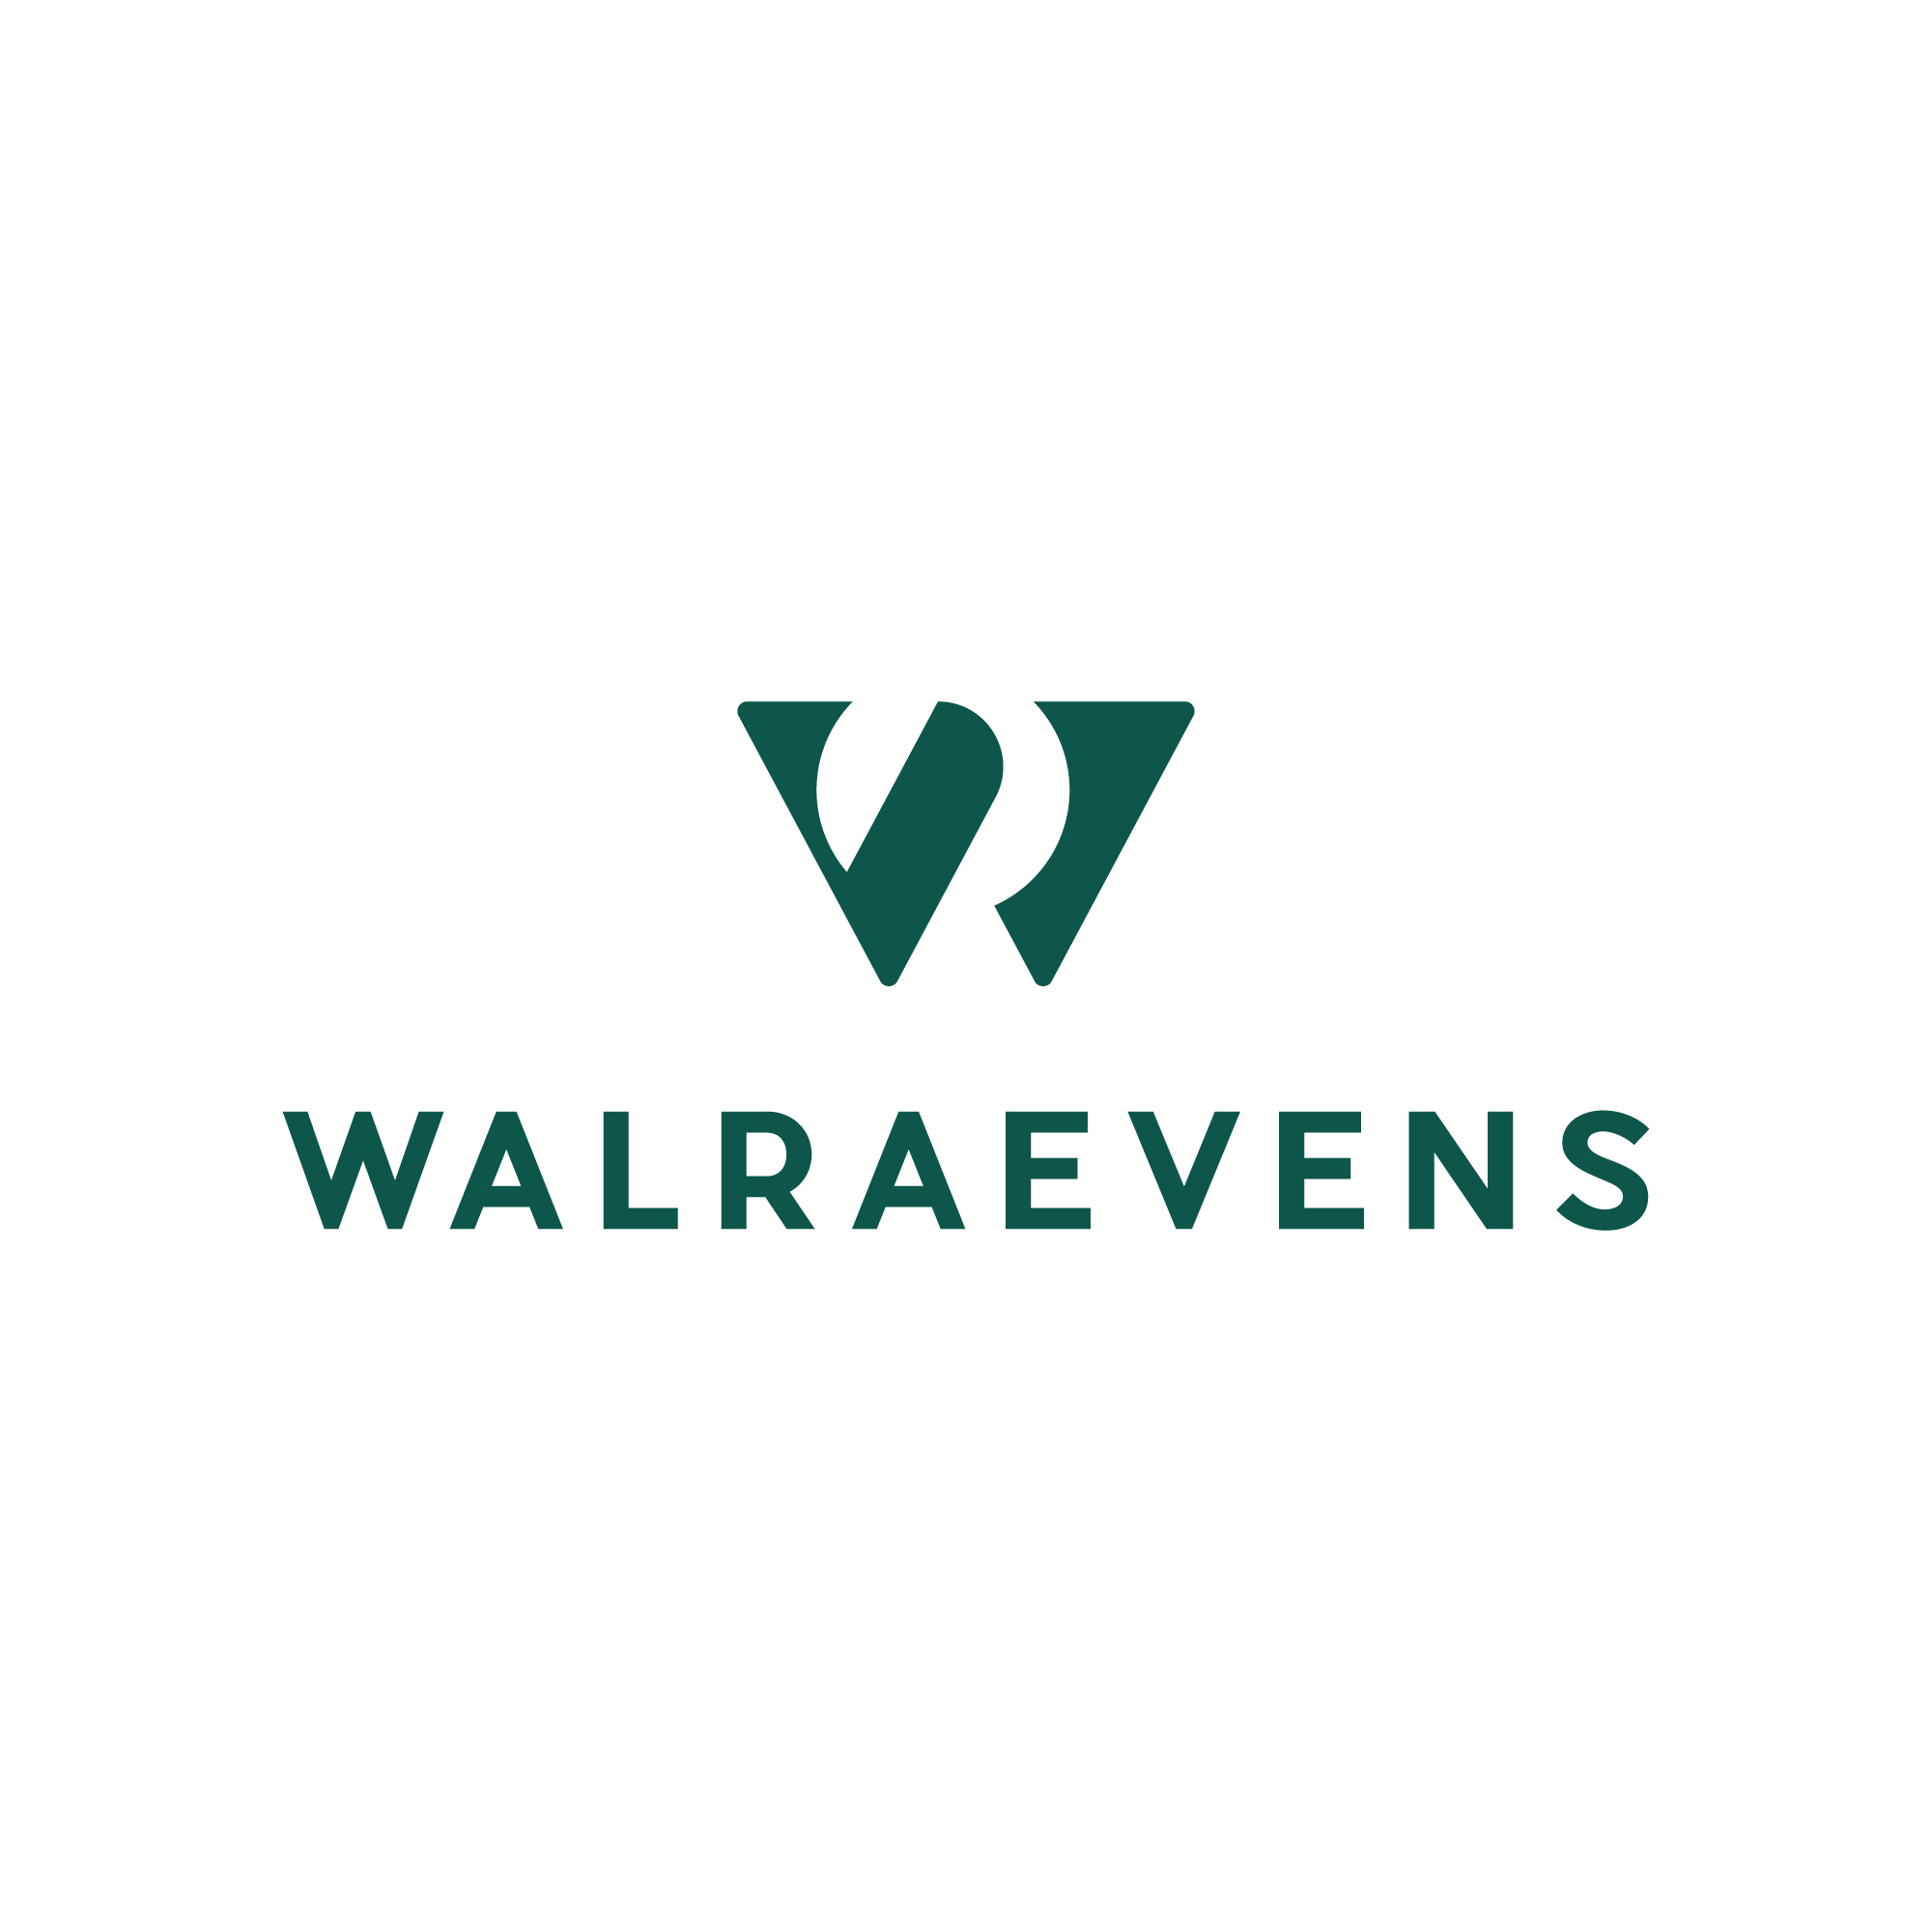 https://sconcept.be/wp-content/uploads/2022/09/walraevens-logo-alt-green.jpg